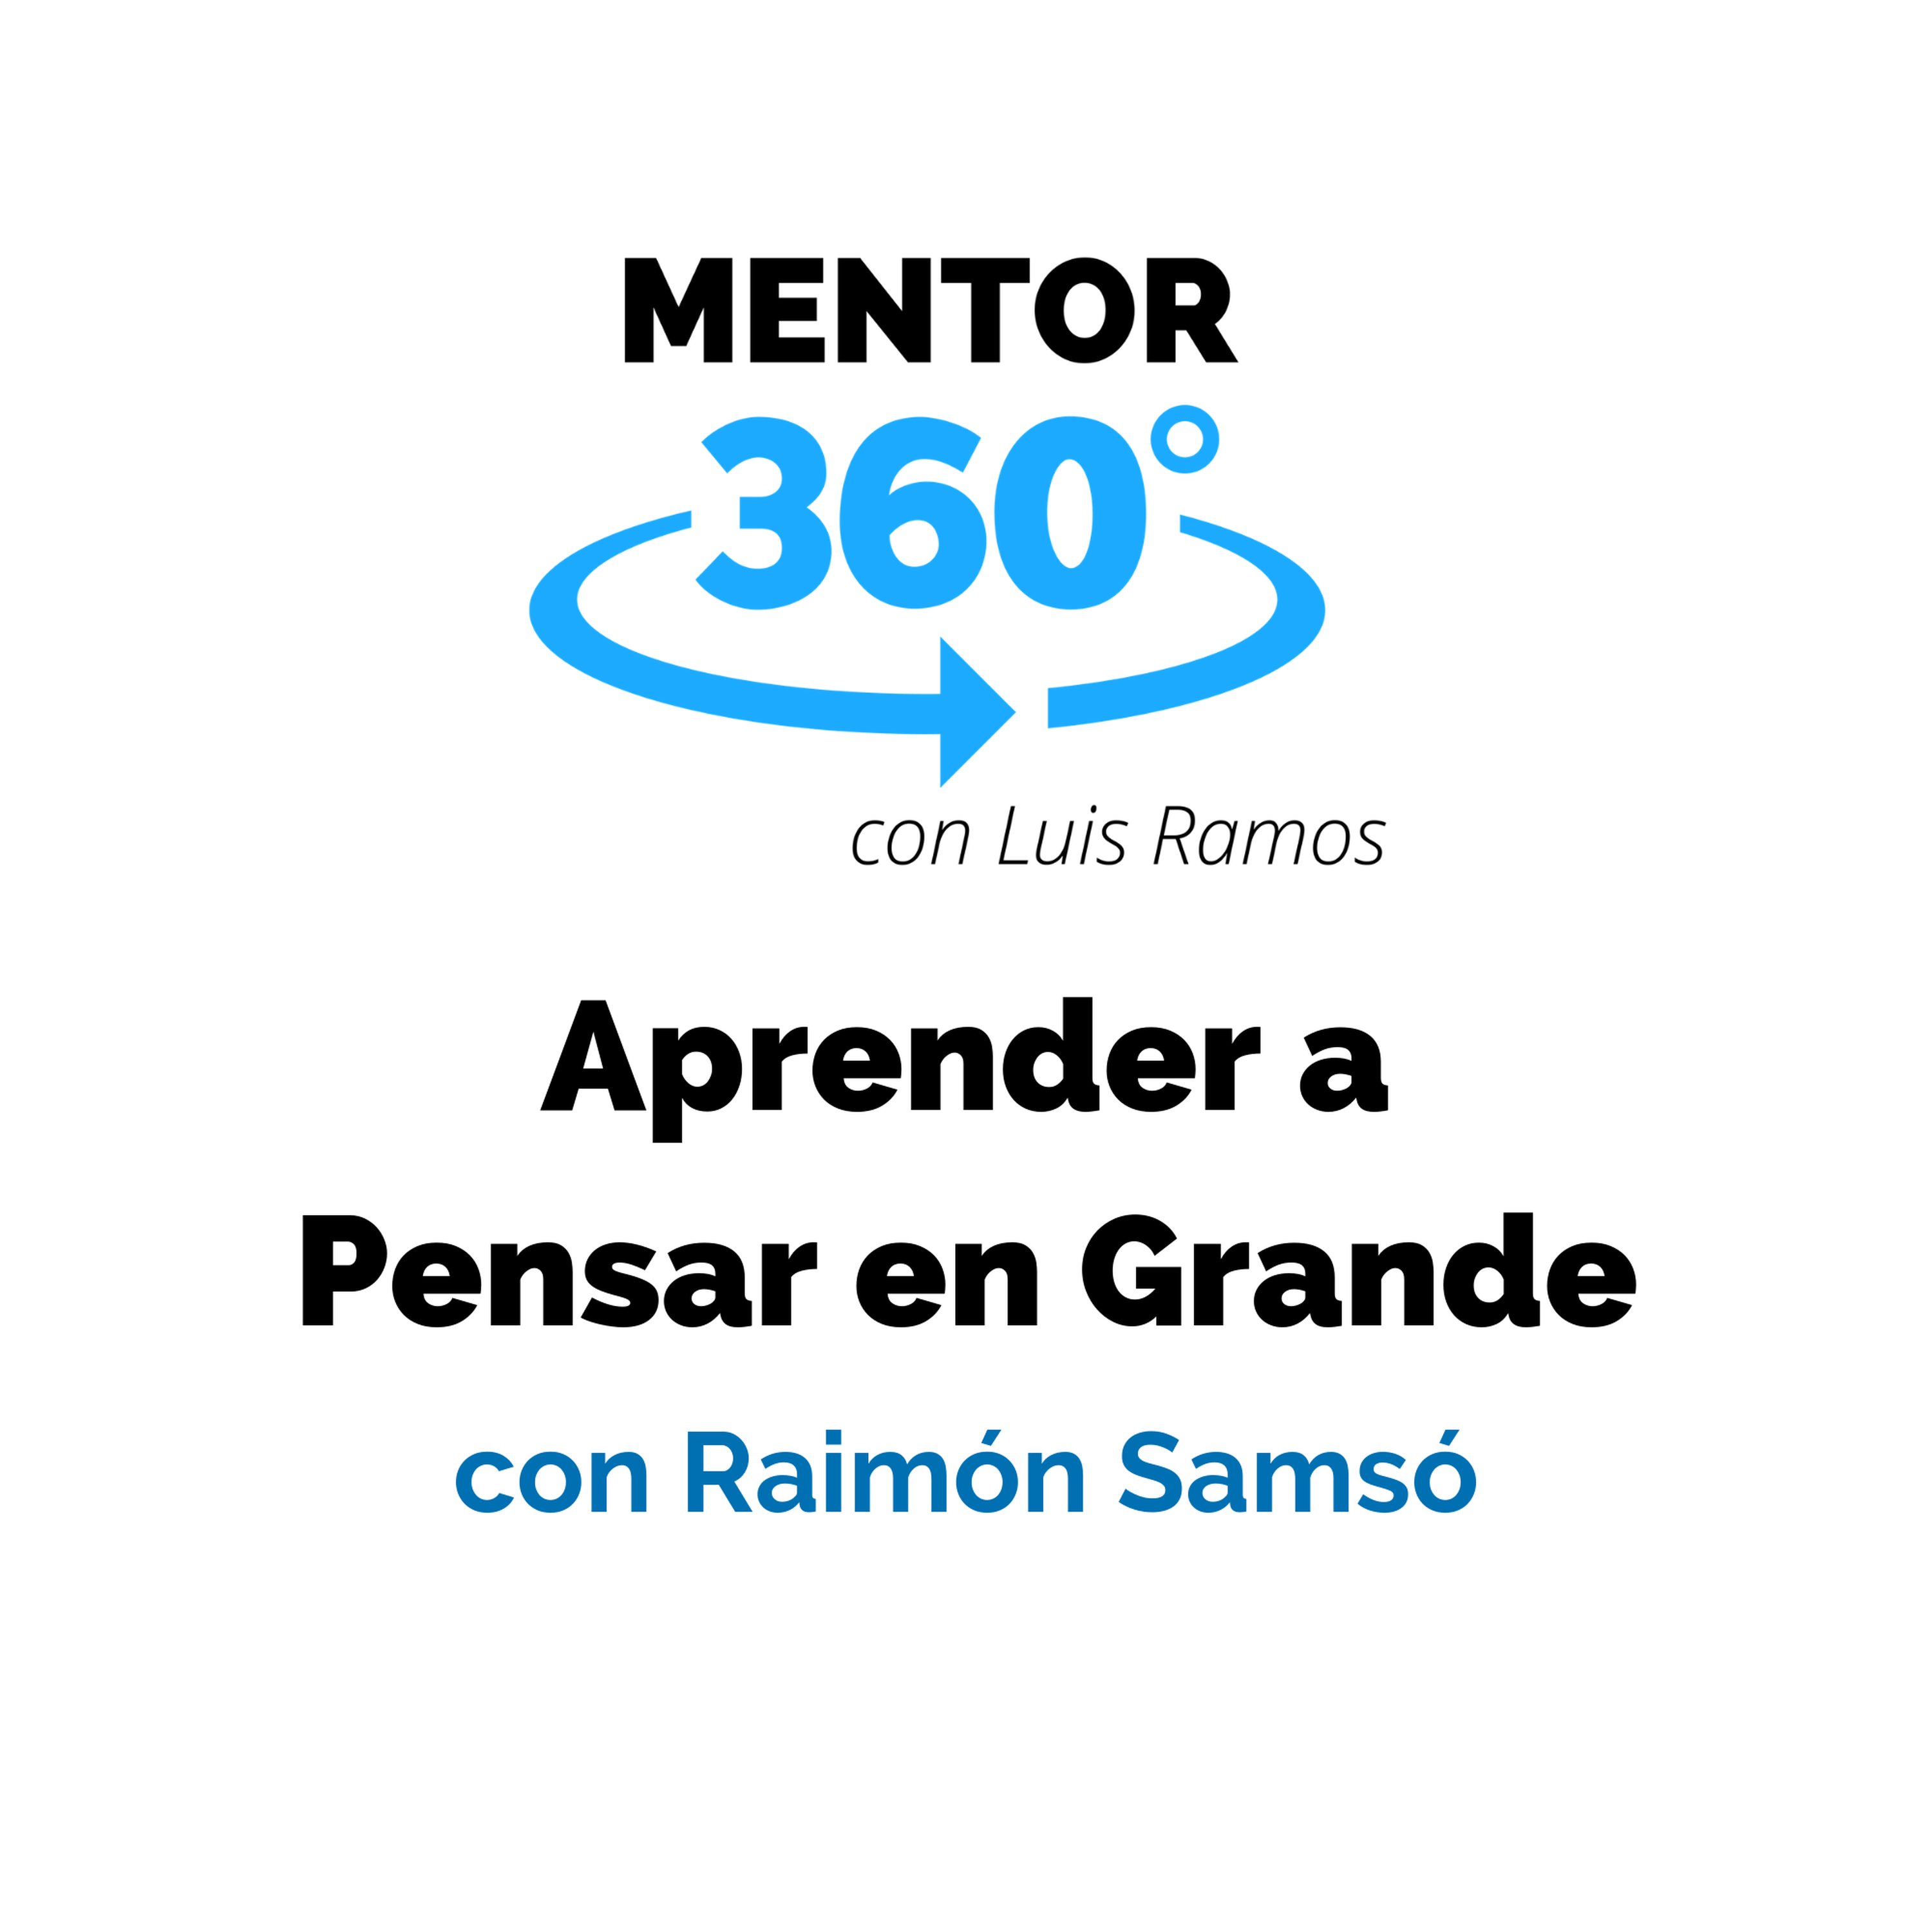 Aprender a Pensar en Grande, con Raimón Samsó- DESARROLLO PERSONAL - MENTOR360